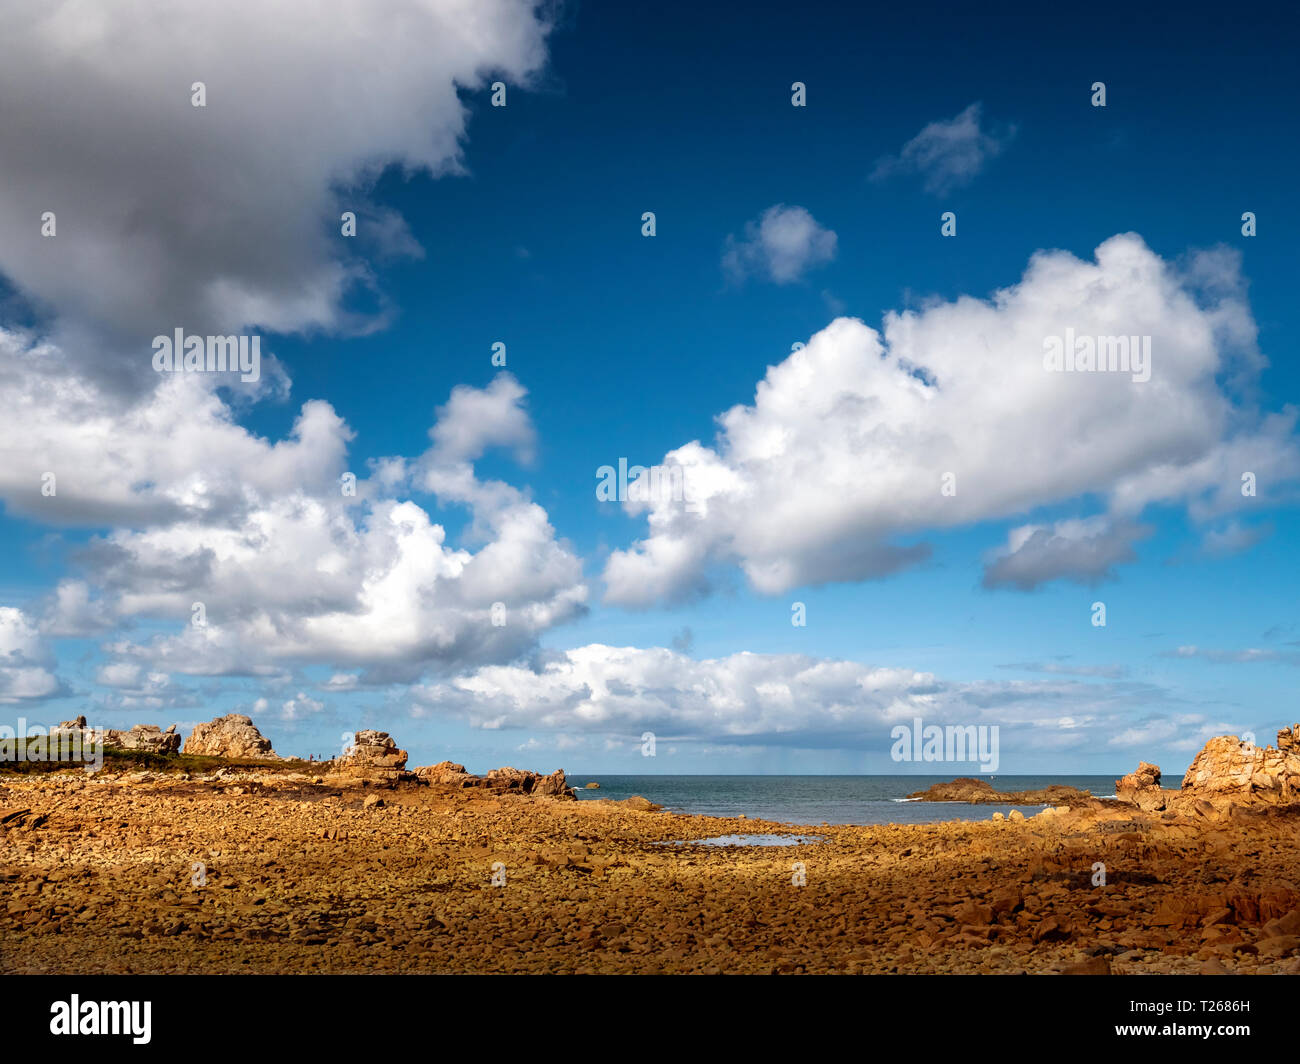 France, Bretagne, Plougrescant, Cote de Granit Rose, rocky coast at Pointe du Chateau Stock Photo